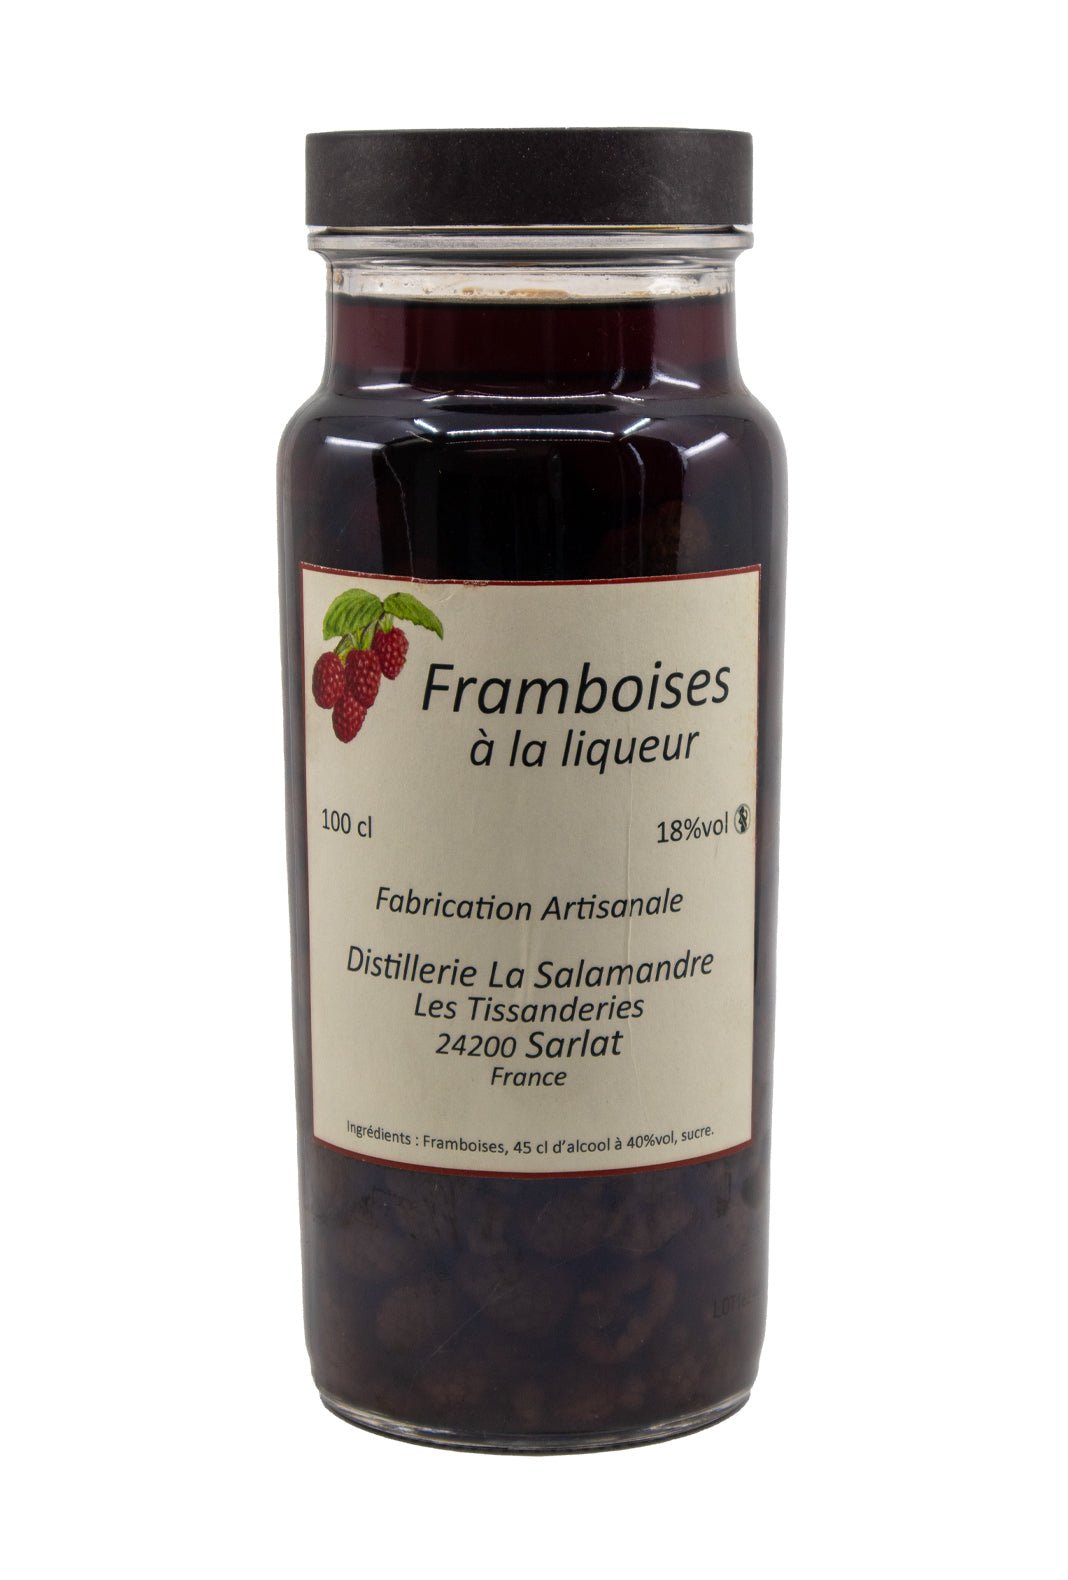 Salamandre Framboises a la Liqueur (Raspberries in Liqueur) 18% 1000ml - Liquor & Spirits - Liquor Wine Cave